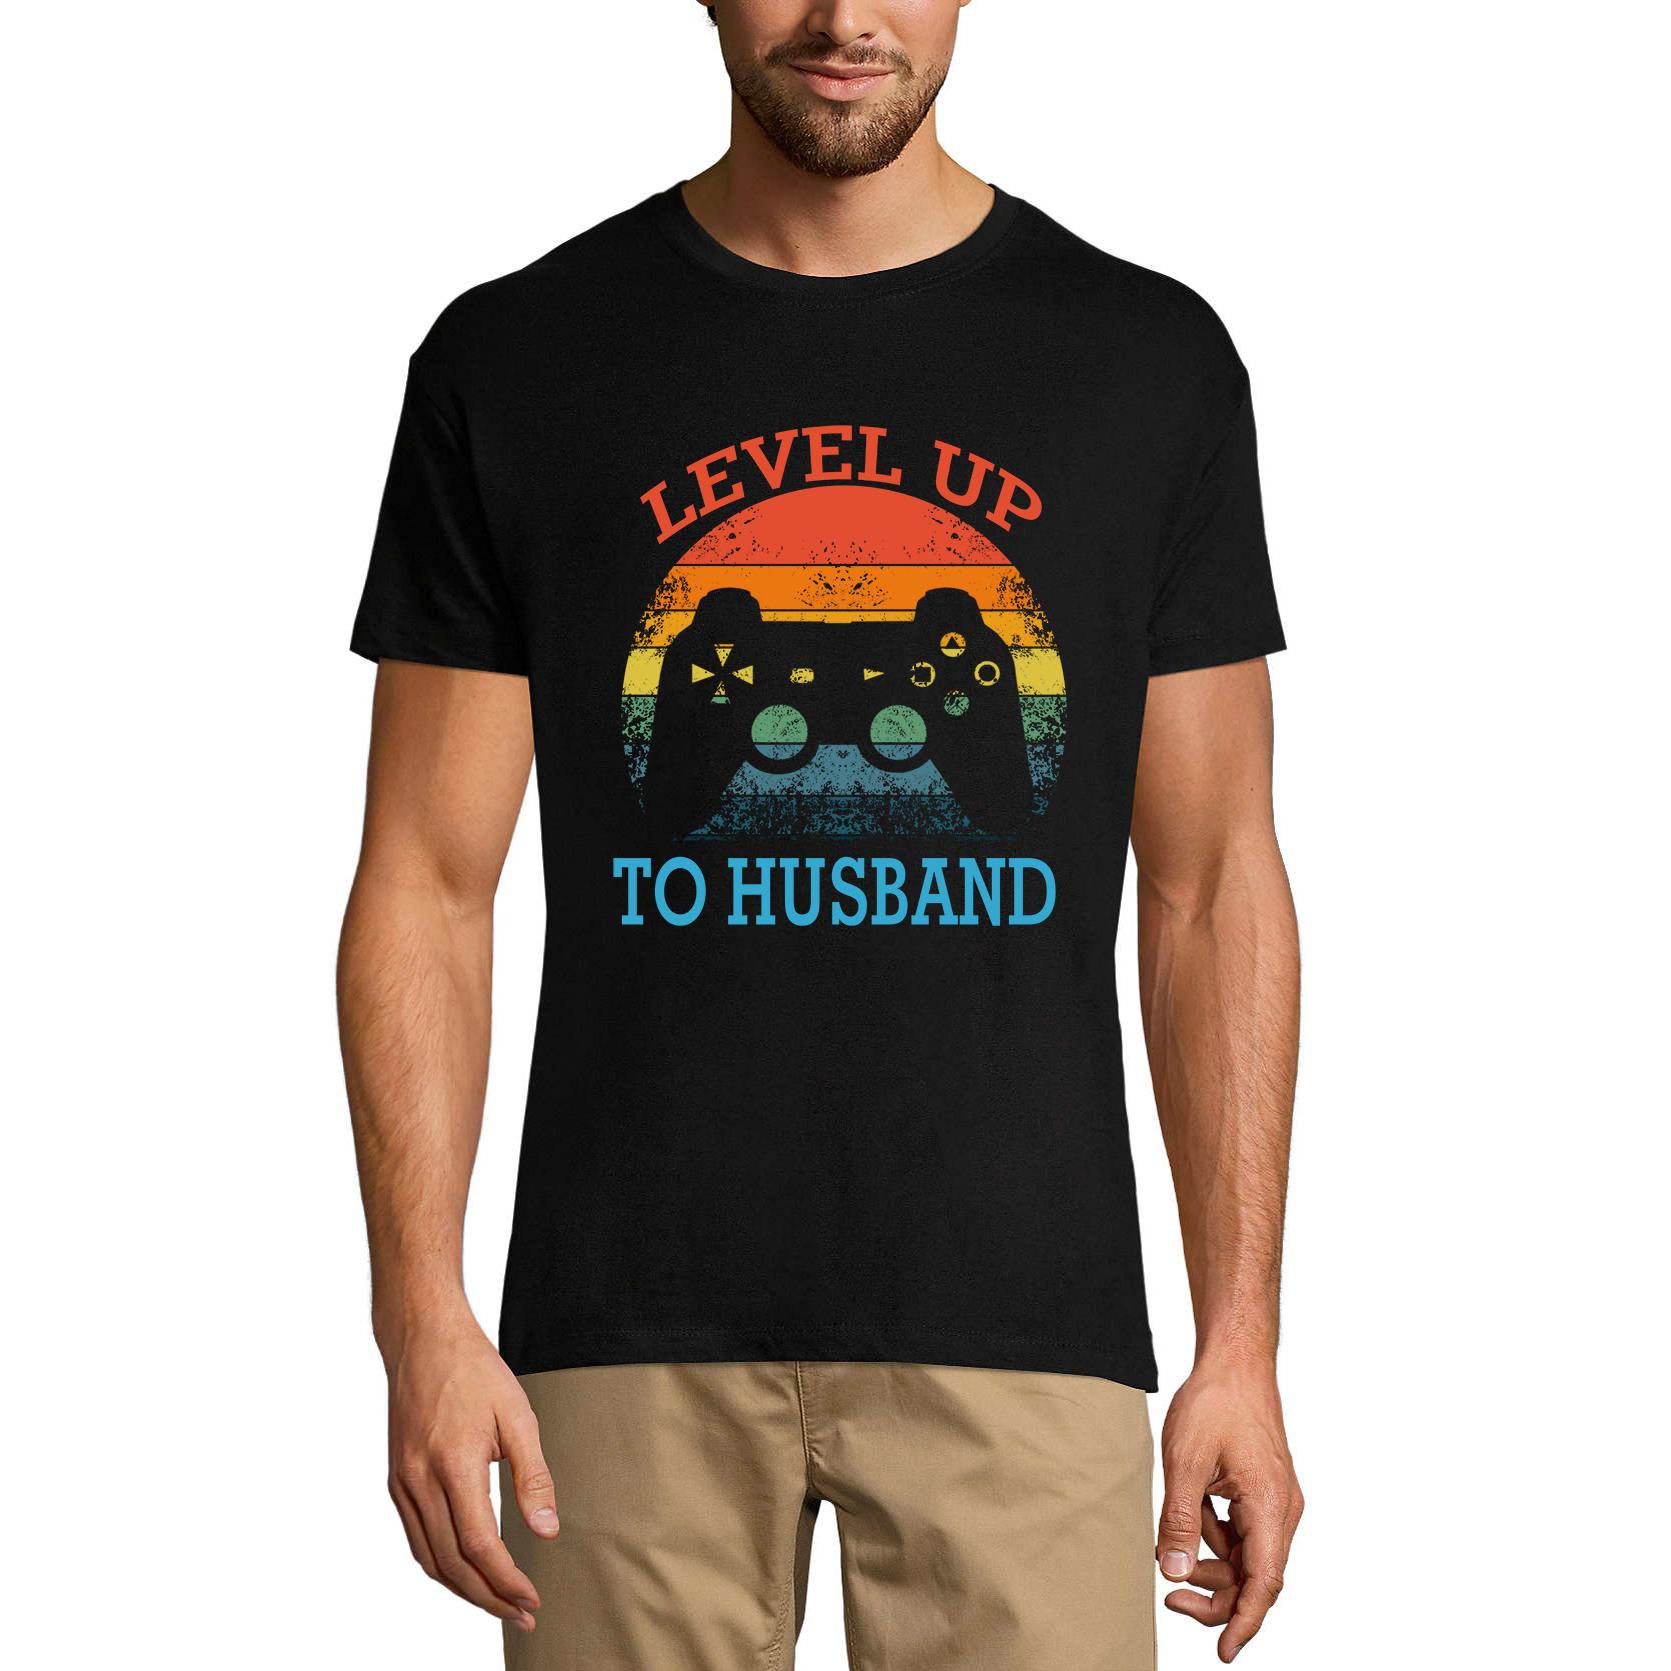 Ultrabasic Grafisch T-shirt voor heren, niveau tot echtgenoot, grappig gaming-shirt voor hem